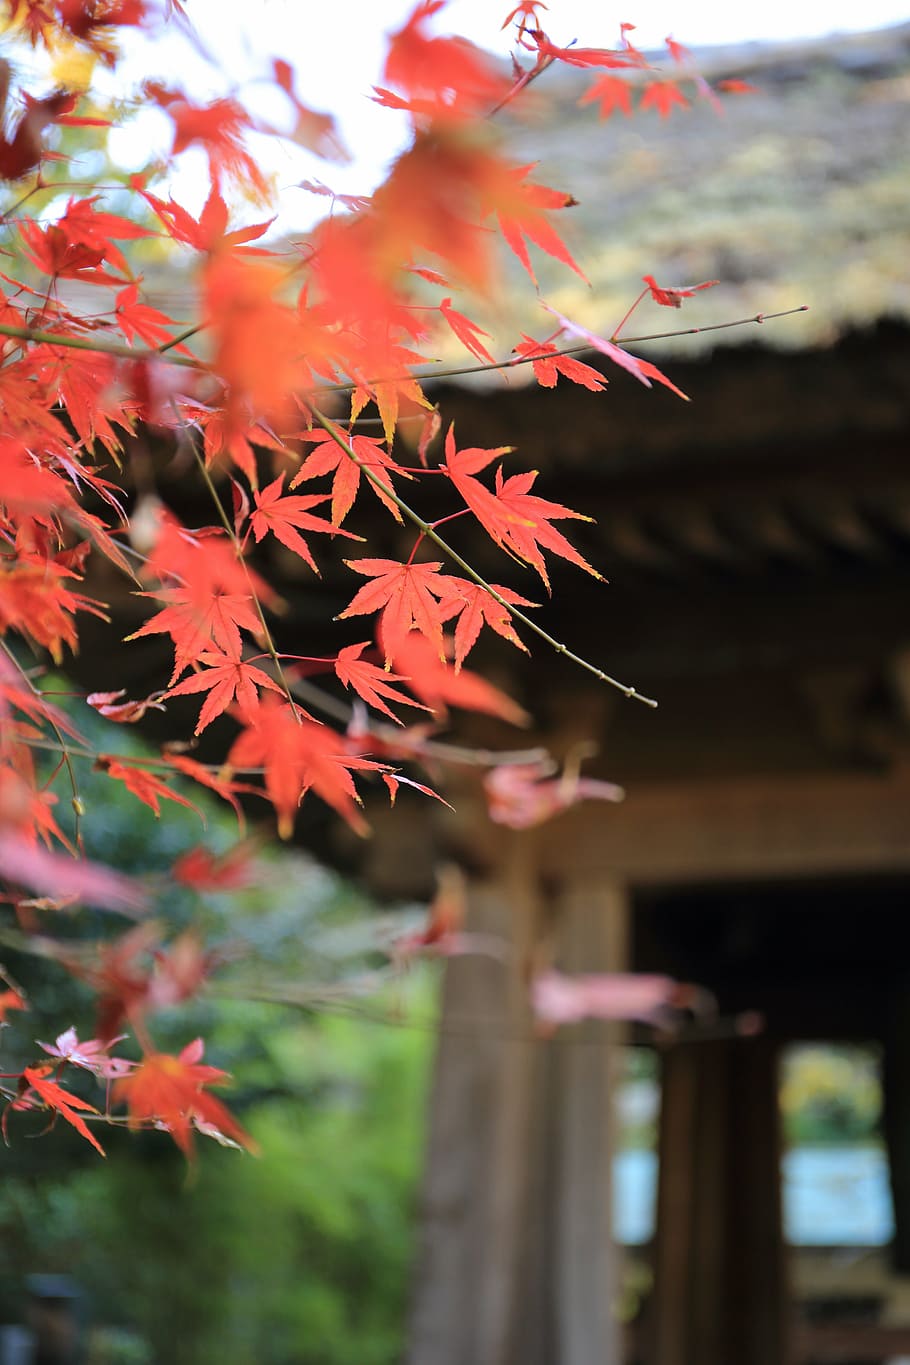 seletiva, fotografia de foco, árvore de bordo, folhas, outono, árvores, natureza, japão, cidade de kyoto, prefeitura de kyoto